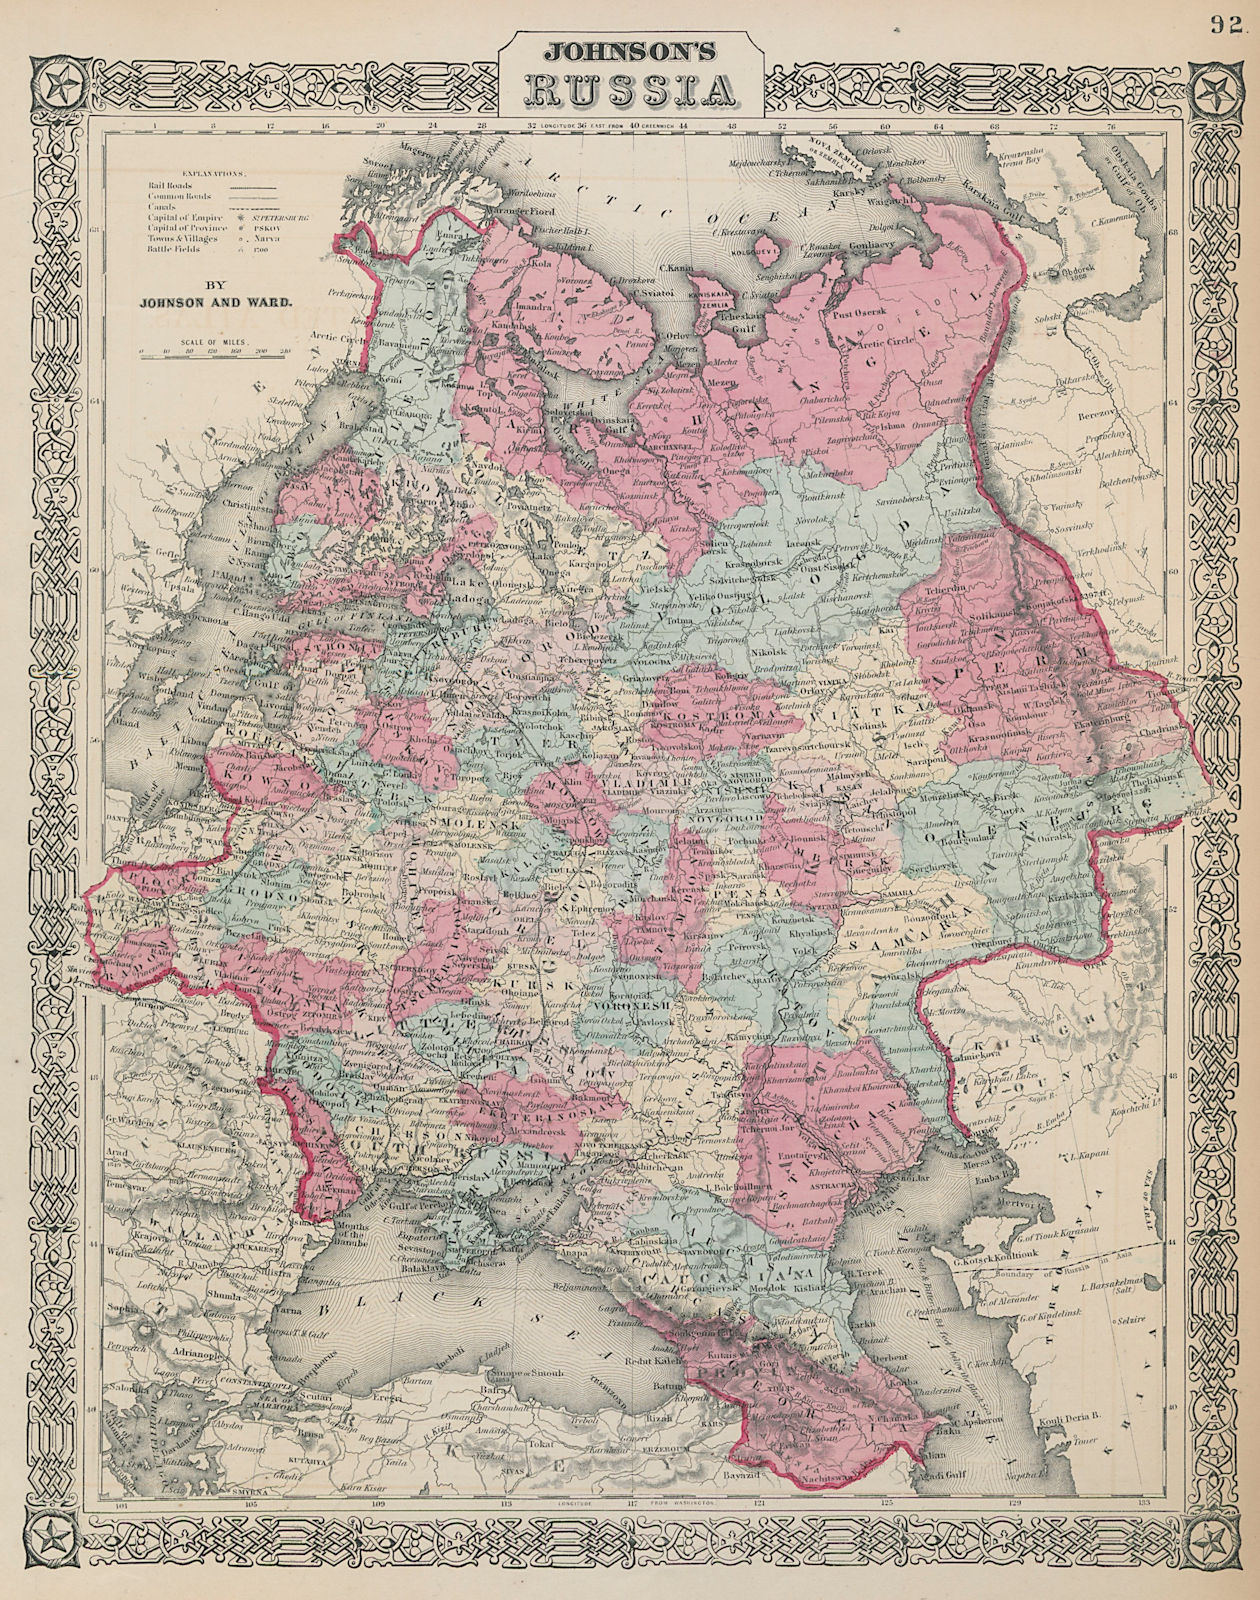 Johnson's Russia in Europe. Ukraine Poland Baltics Finland Caucasus 1865 map